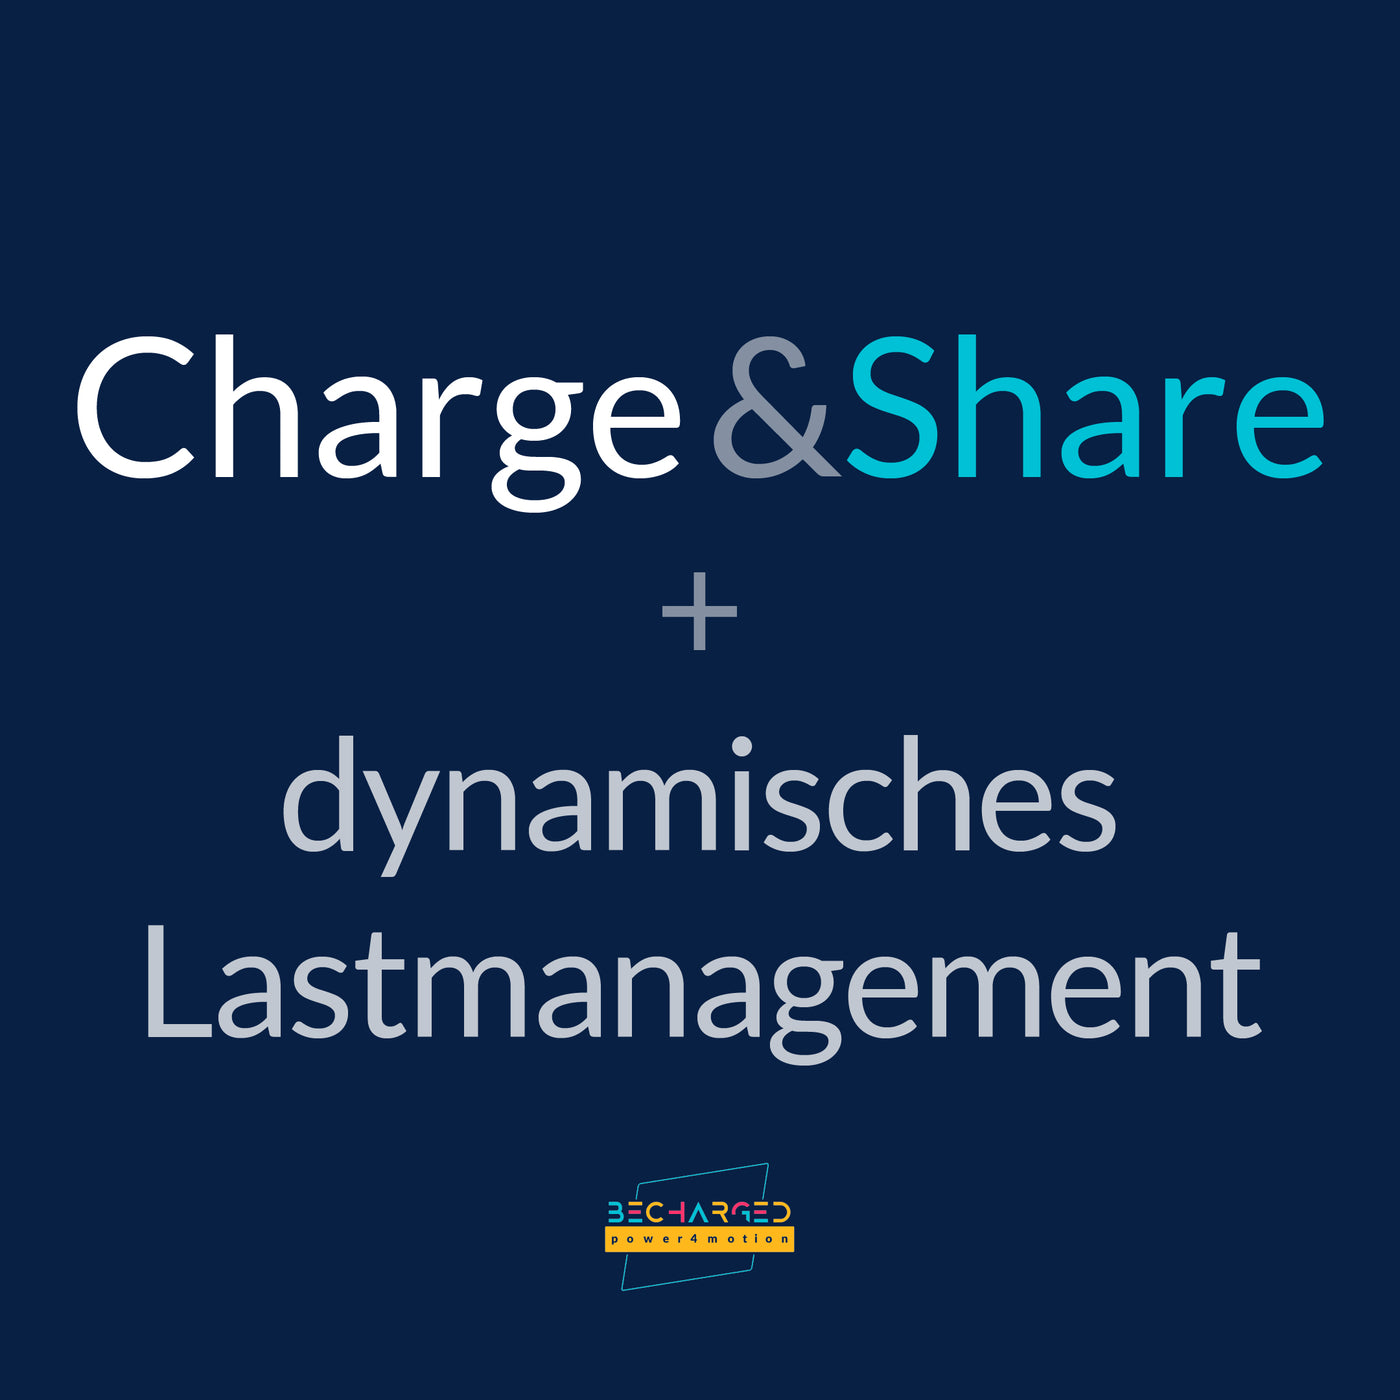 Ein dunkelblauer Hintergrund auf dem der Schriftzug Charge & Share + dynamisches Lastmanagement" steht. Unten das becharged Logo.